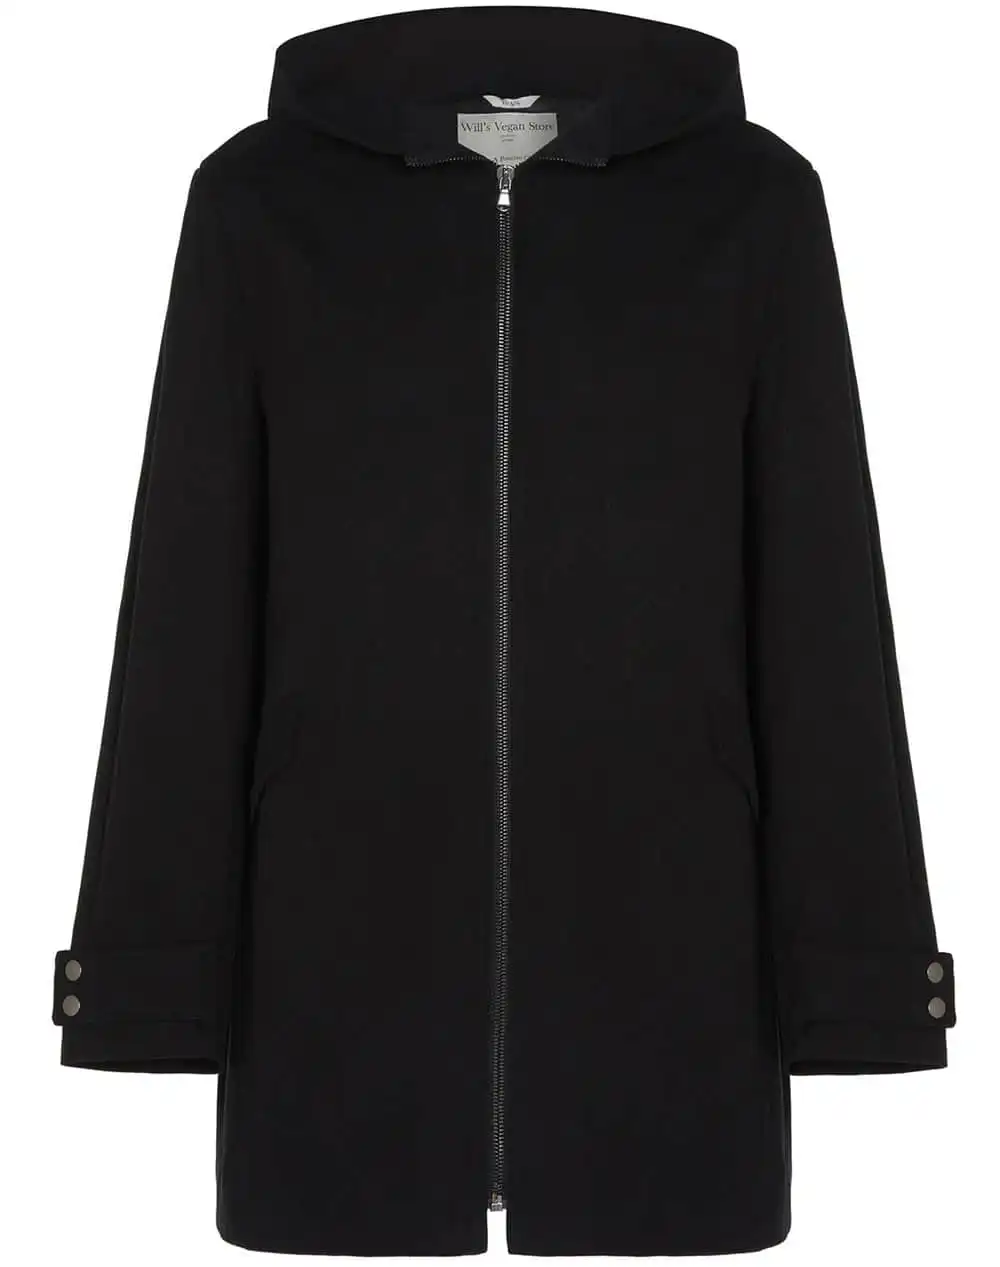 Will's men's vegan wool hooded coat